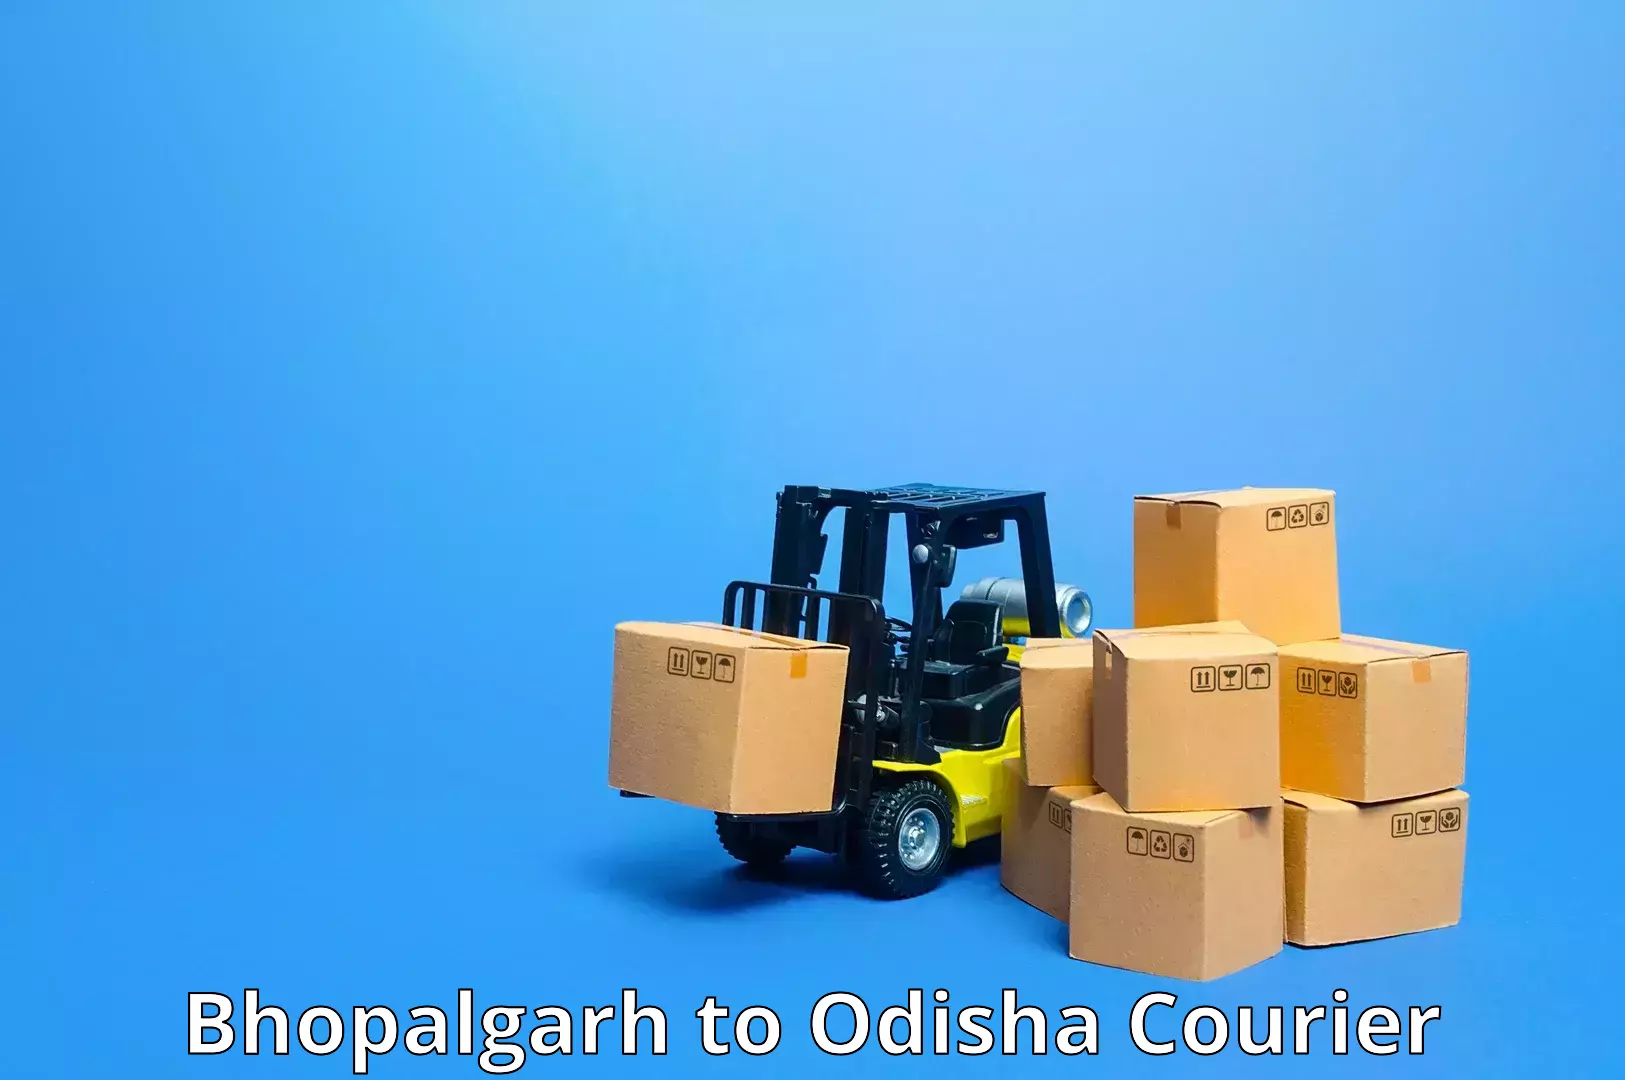 Tech-enabled shipping Bhopalgarh to Baripada